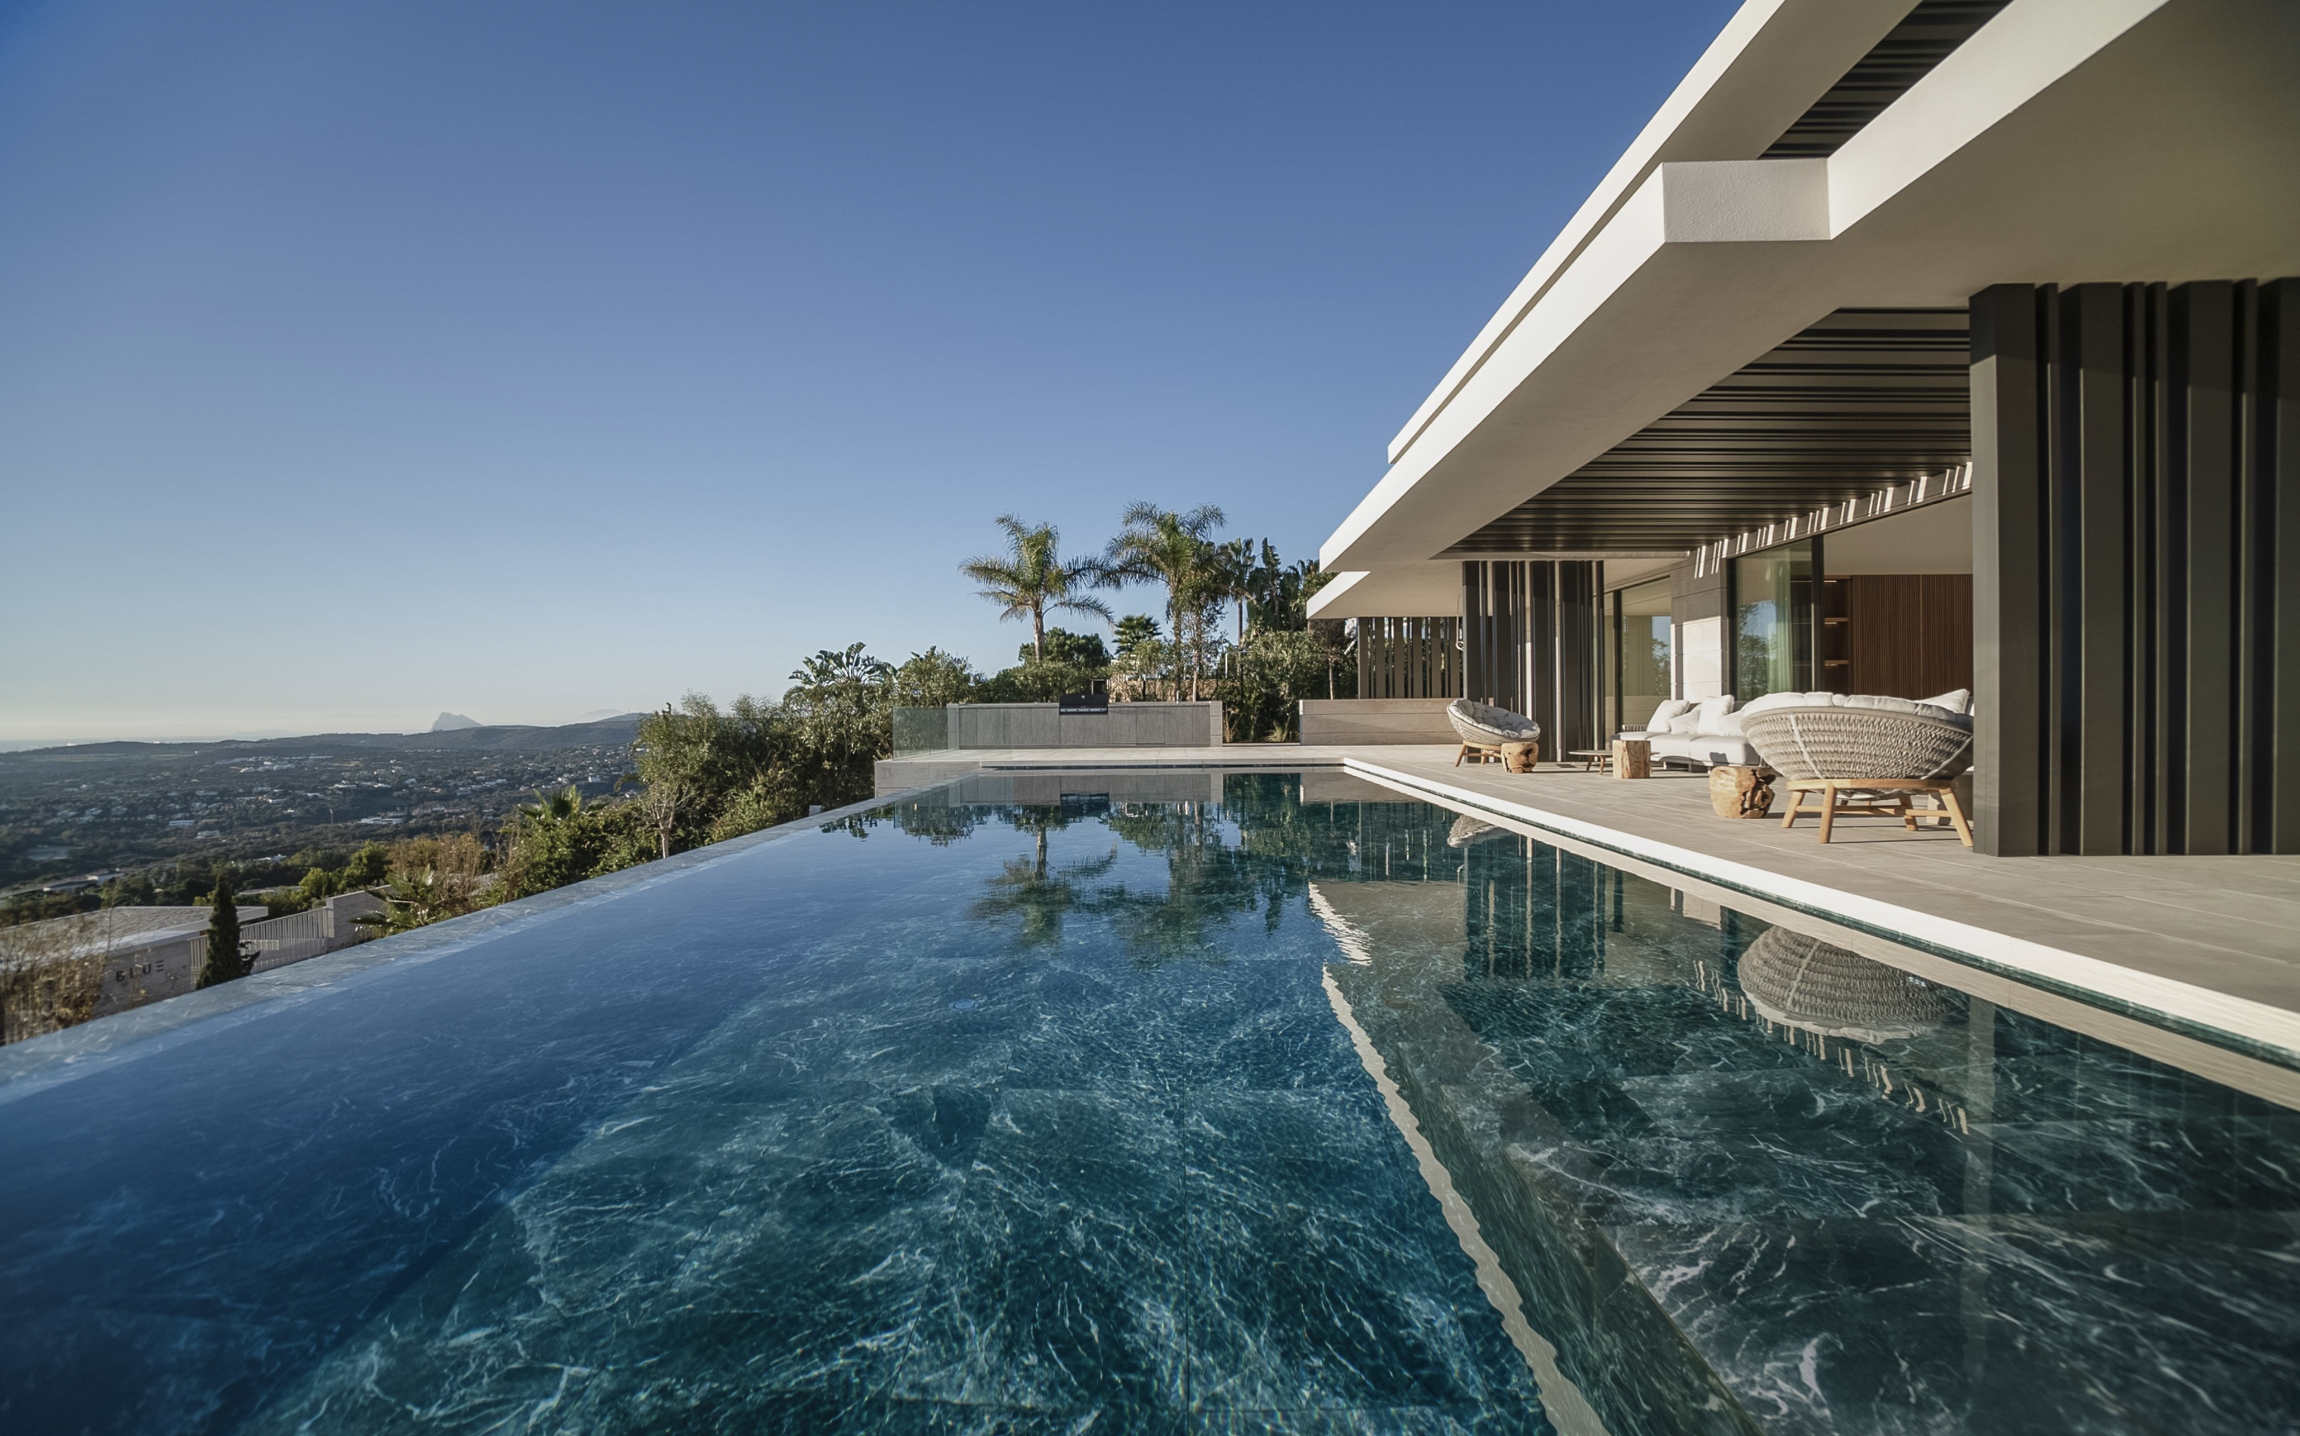 Esta es la casa de lujo ubicada en plena Costa del sol con gimnasio y bodega que es sostenible.